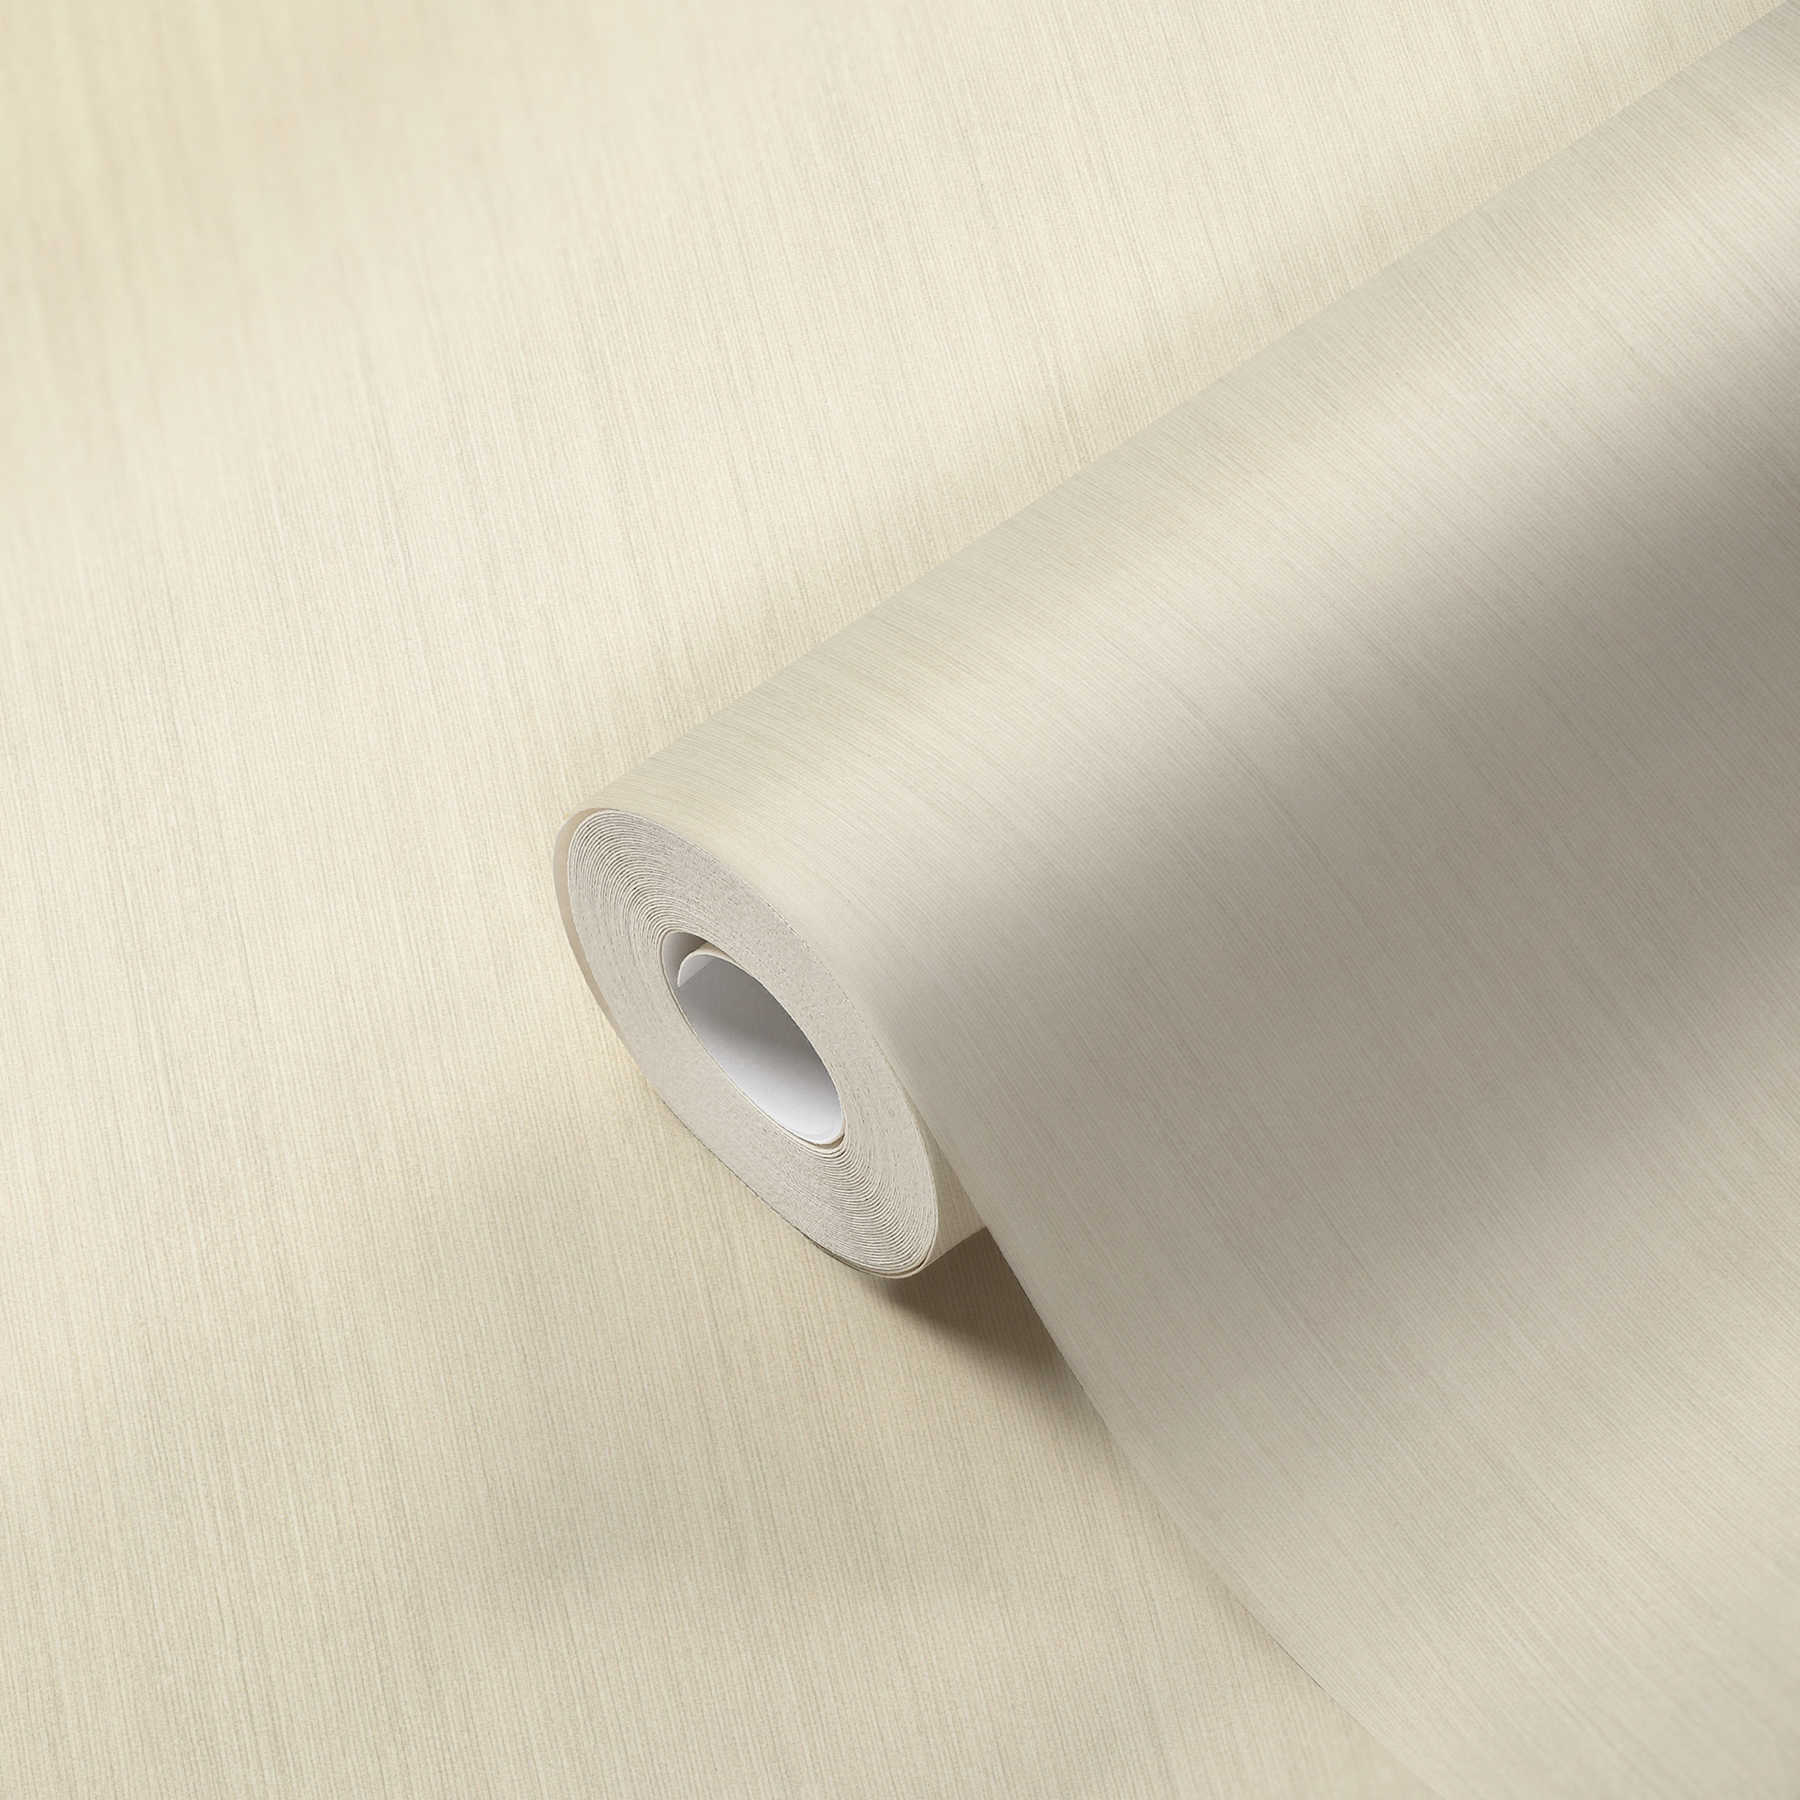             Papier peint uni crème-beige avec motif gaufré & surface mate
        